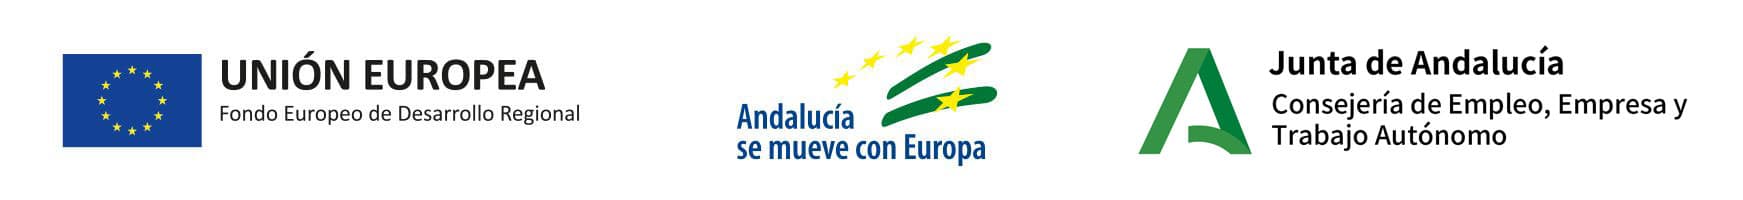 Banner Unión Europea